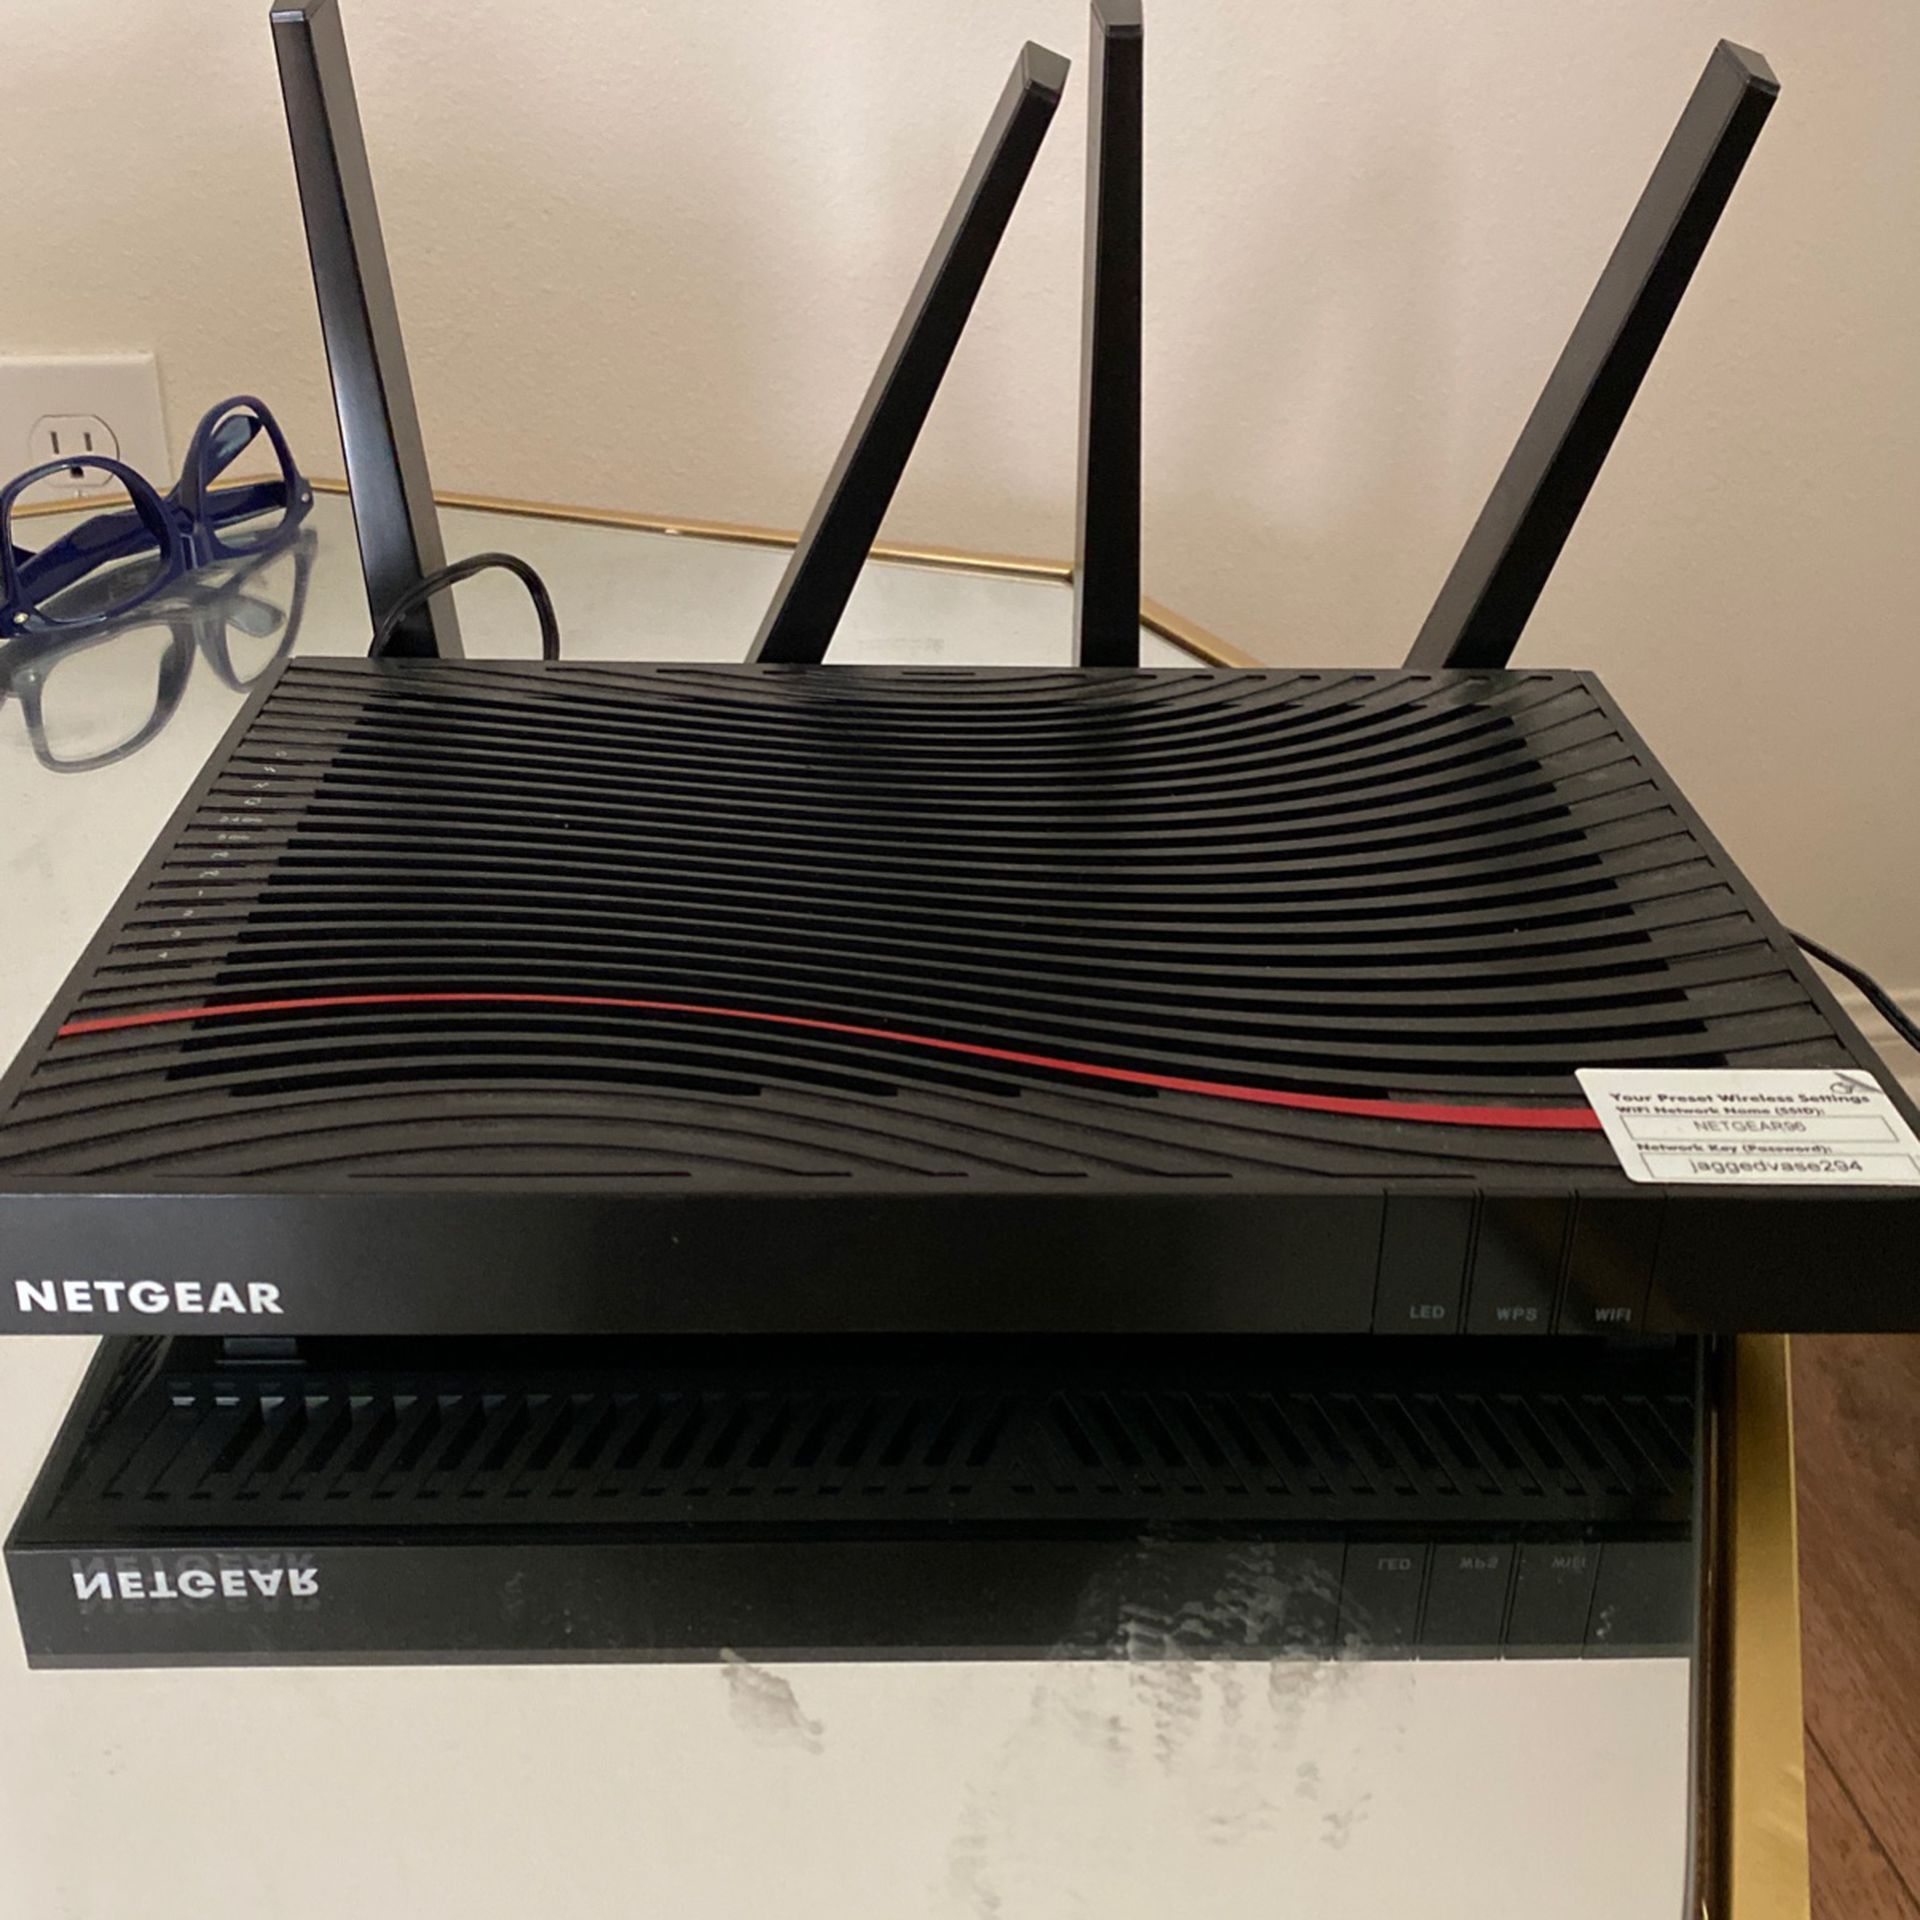 Netgear 5g Nighthawk X4S Router+Modem